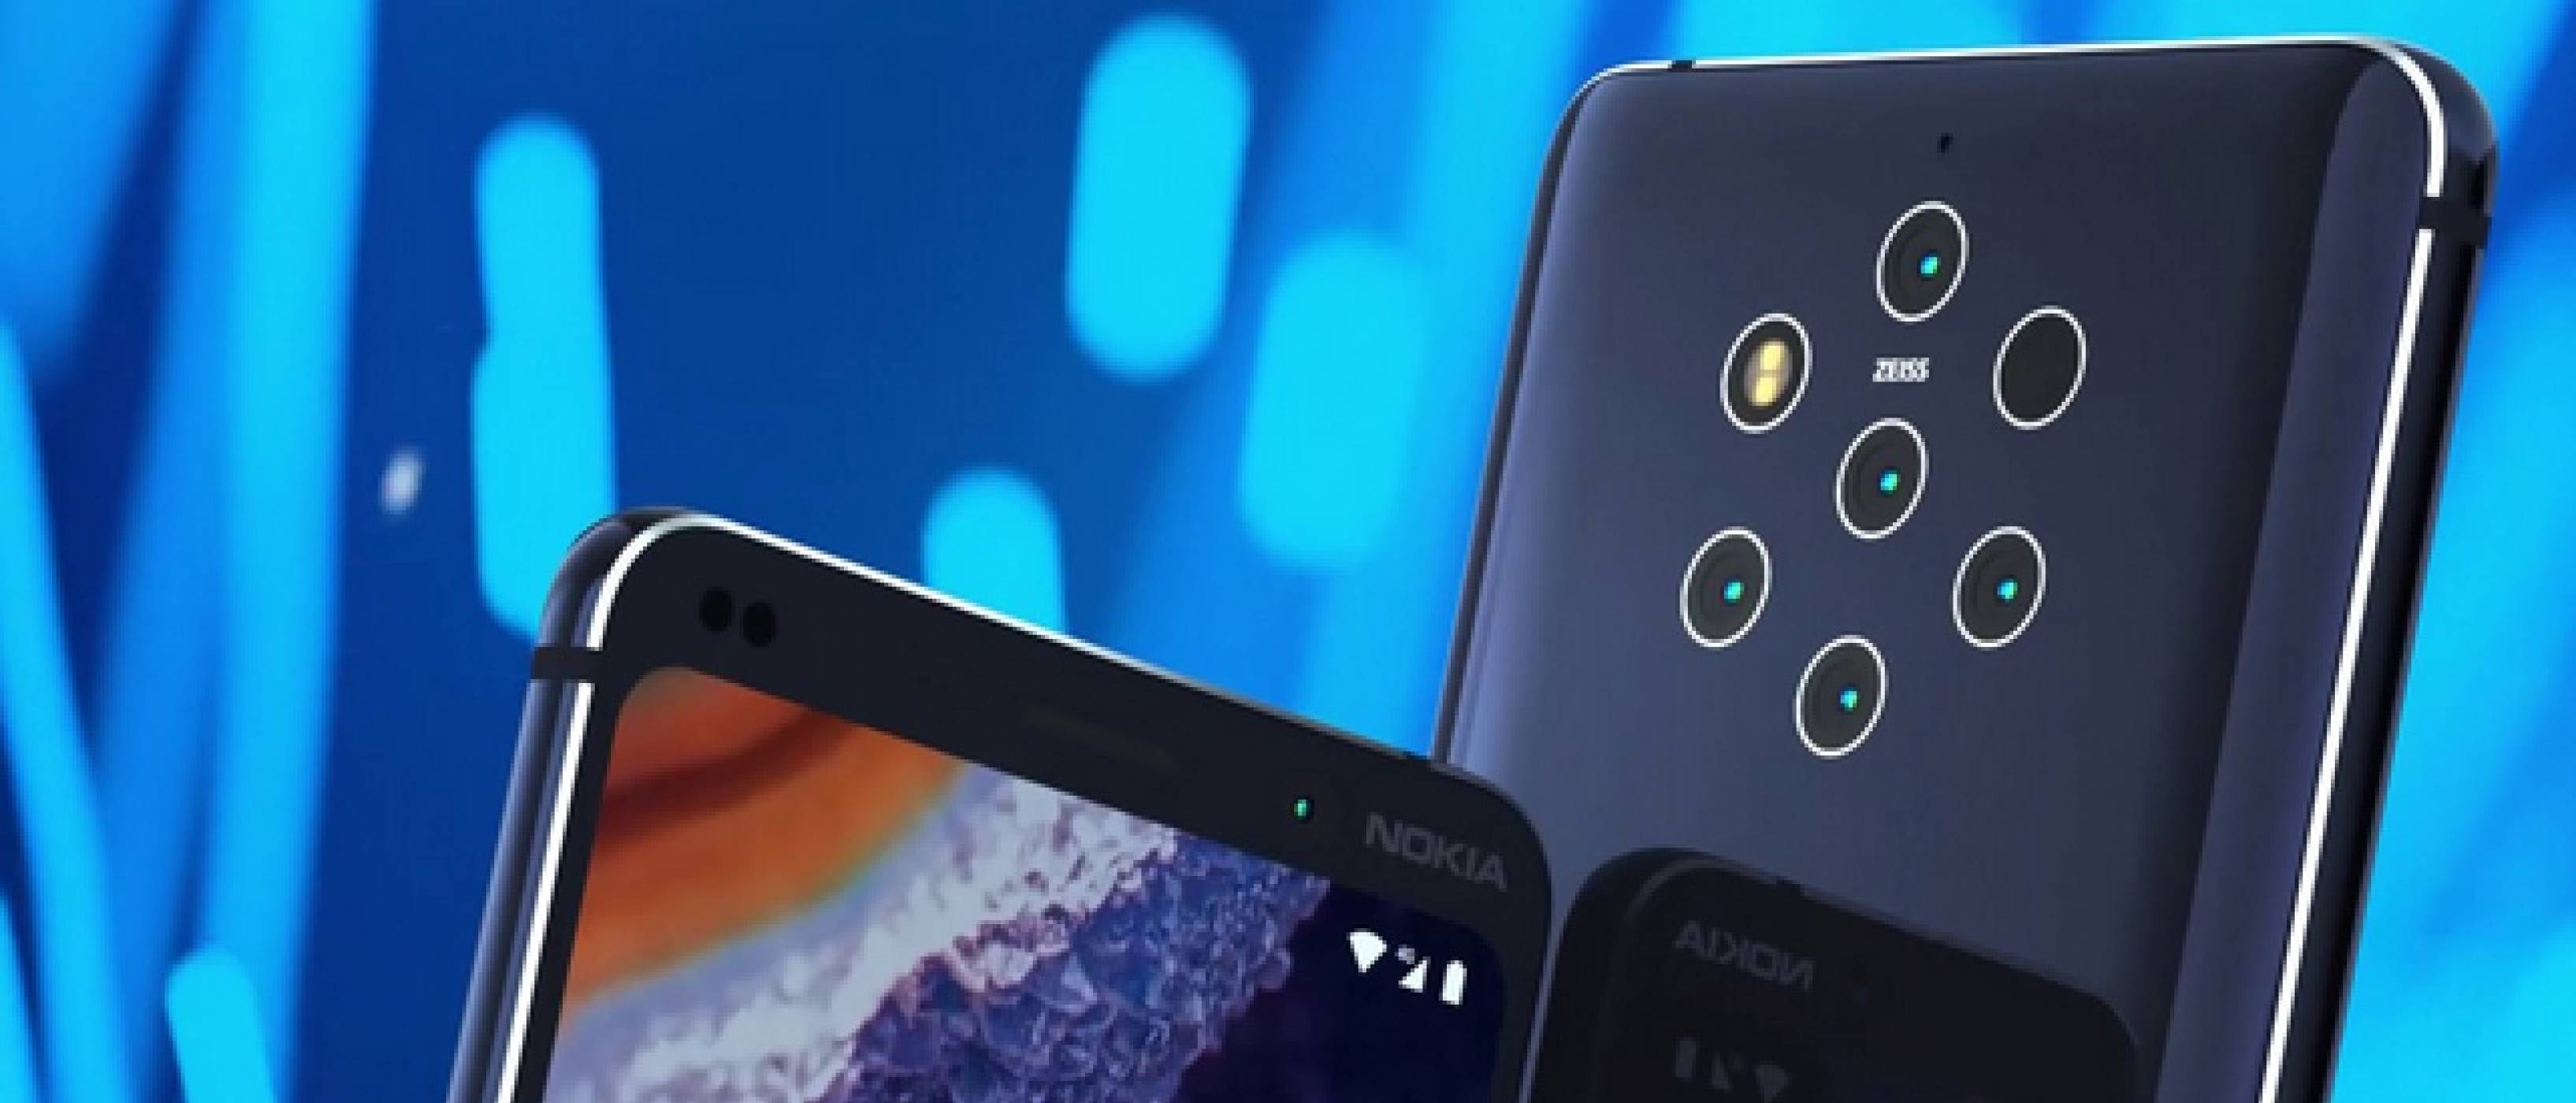 Петте камери на Nokia 9 PureView ви гледат от ново рекламно изображение